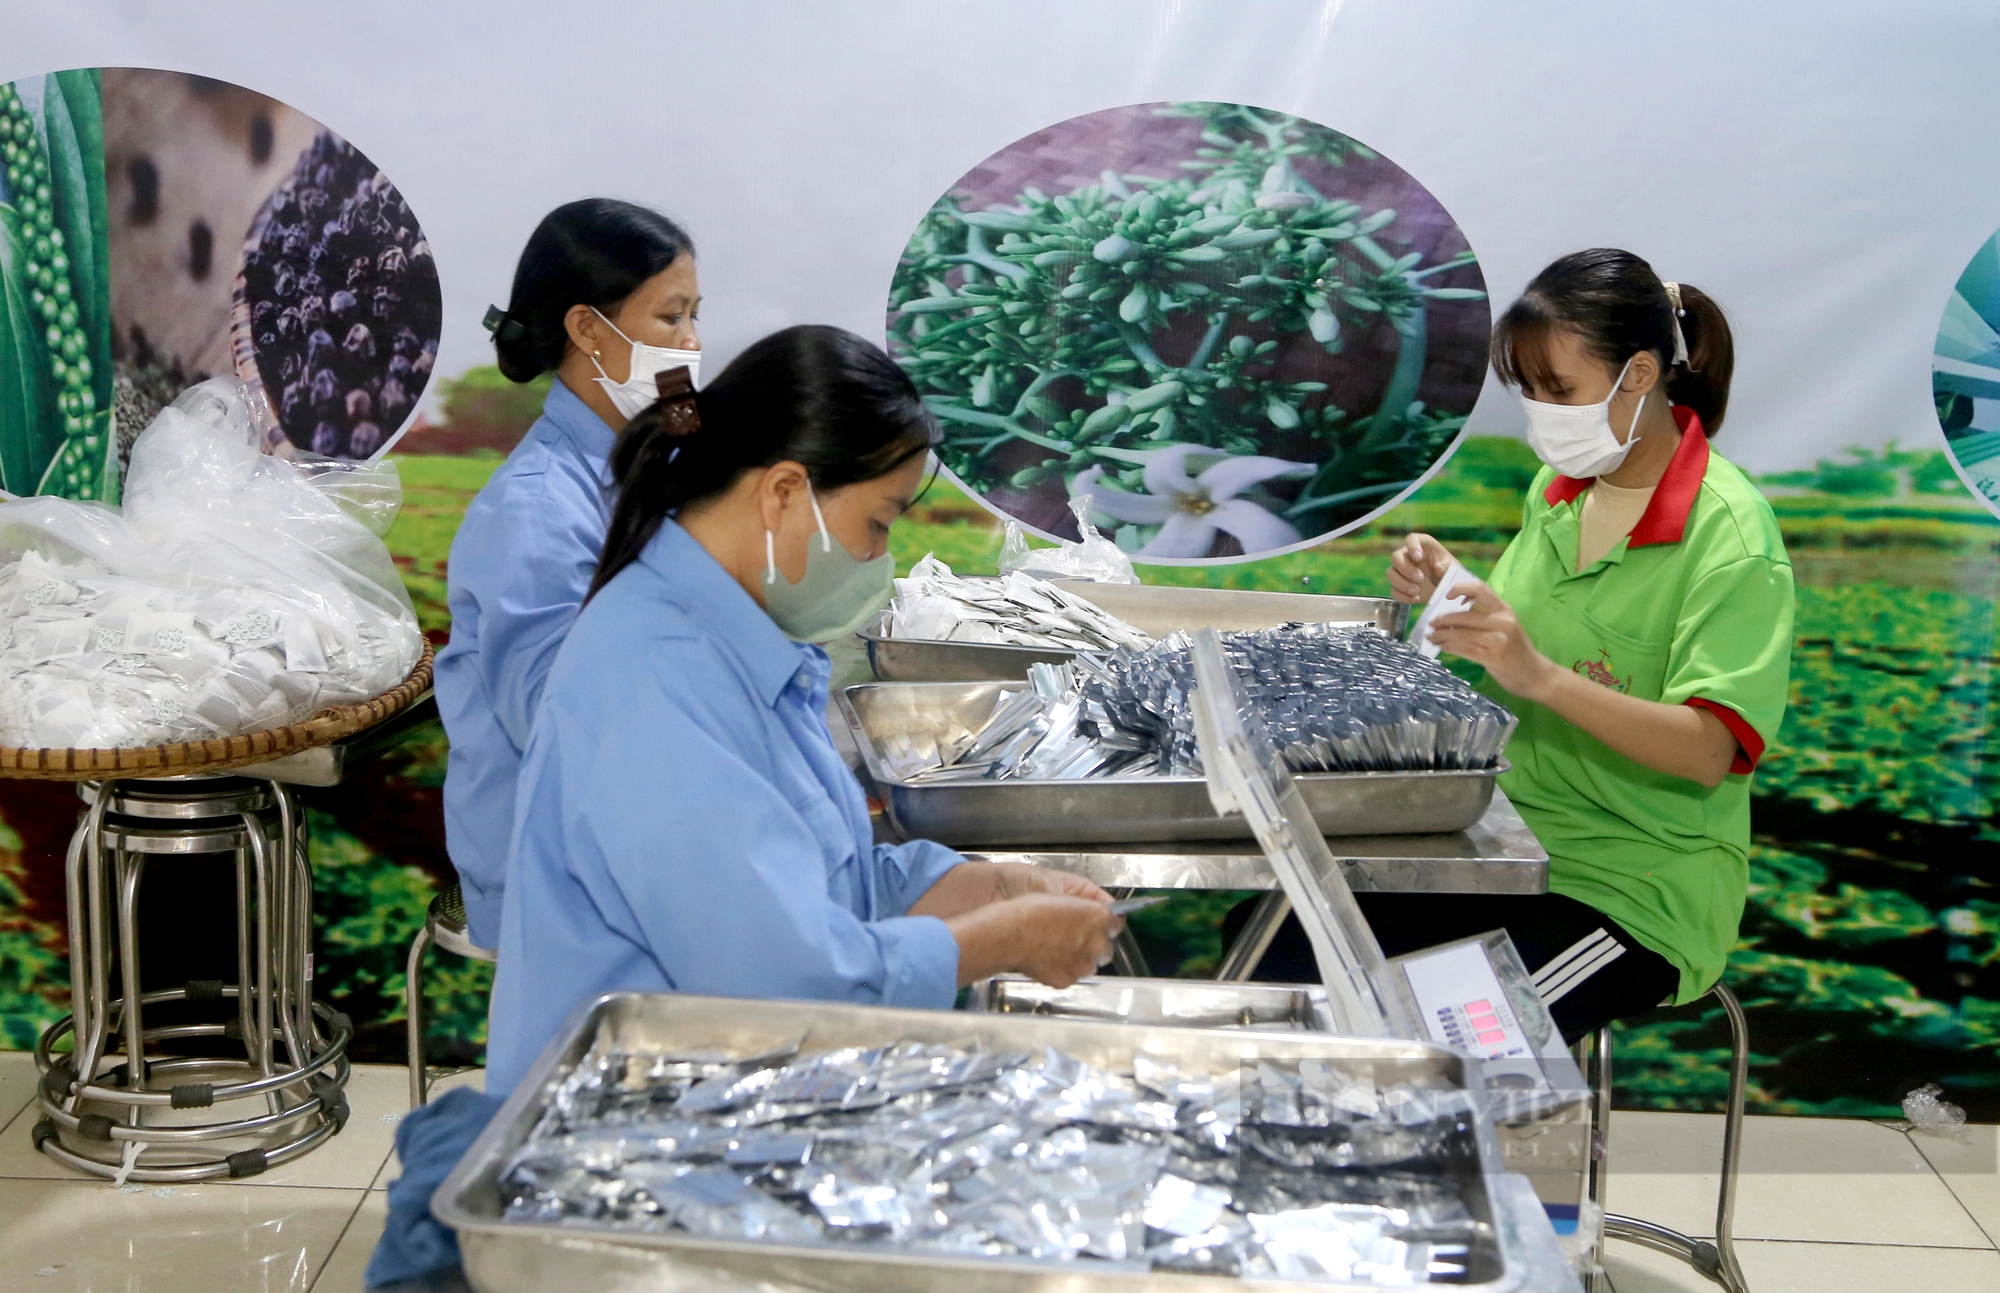 Giám đốc hợp tác xã 9X ở Phú Thọ thu tiền tỷ từ sản xuất trà hoa đu đủ đực - Ảnh 3.